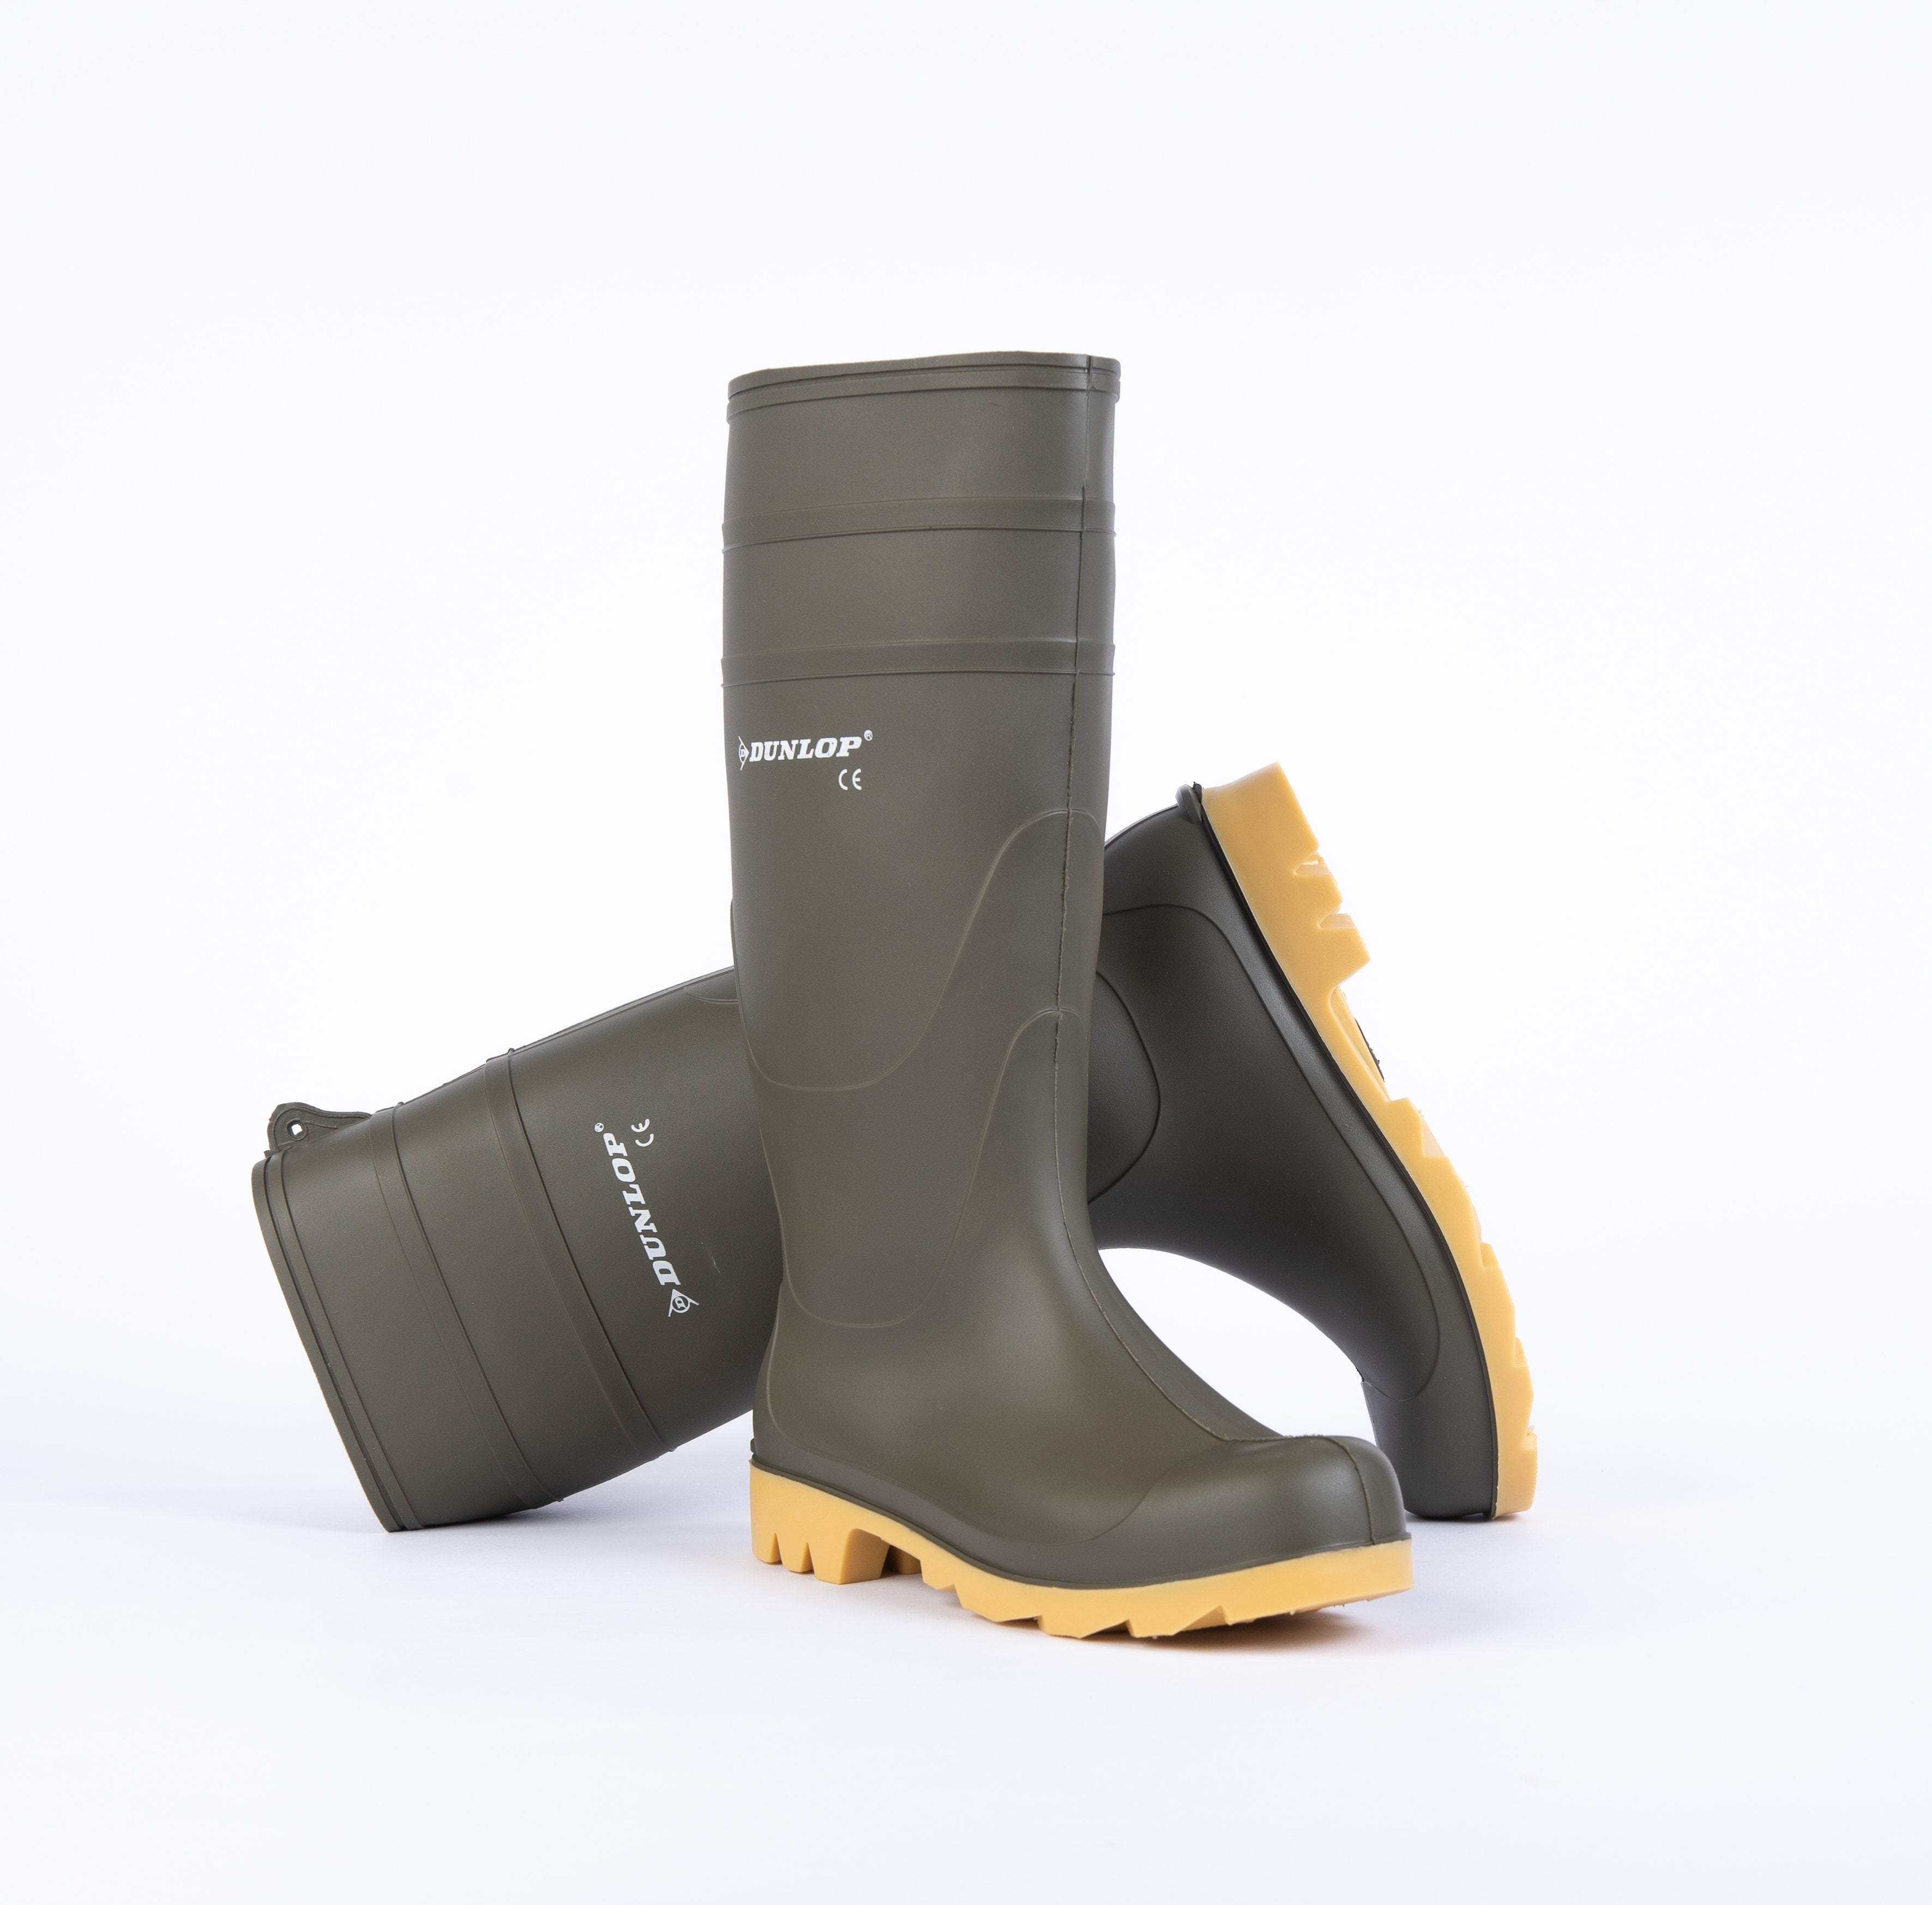 Dunlop Mens Green Pacemaker Wellington Boots | Dunlop- Evercreatures® Official